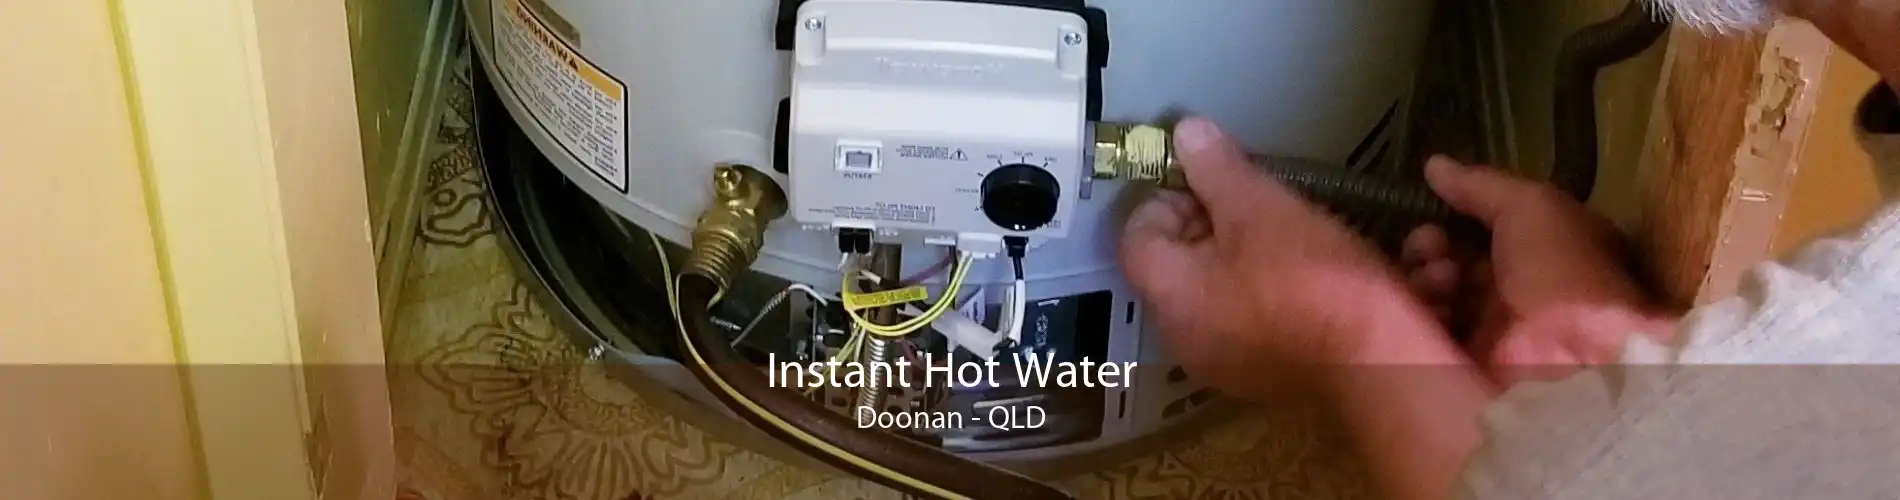 Instant Hot Water Doonan - QLD